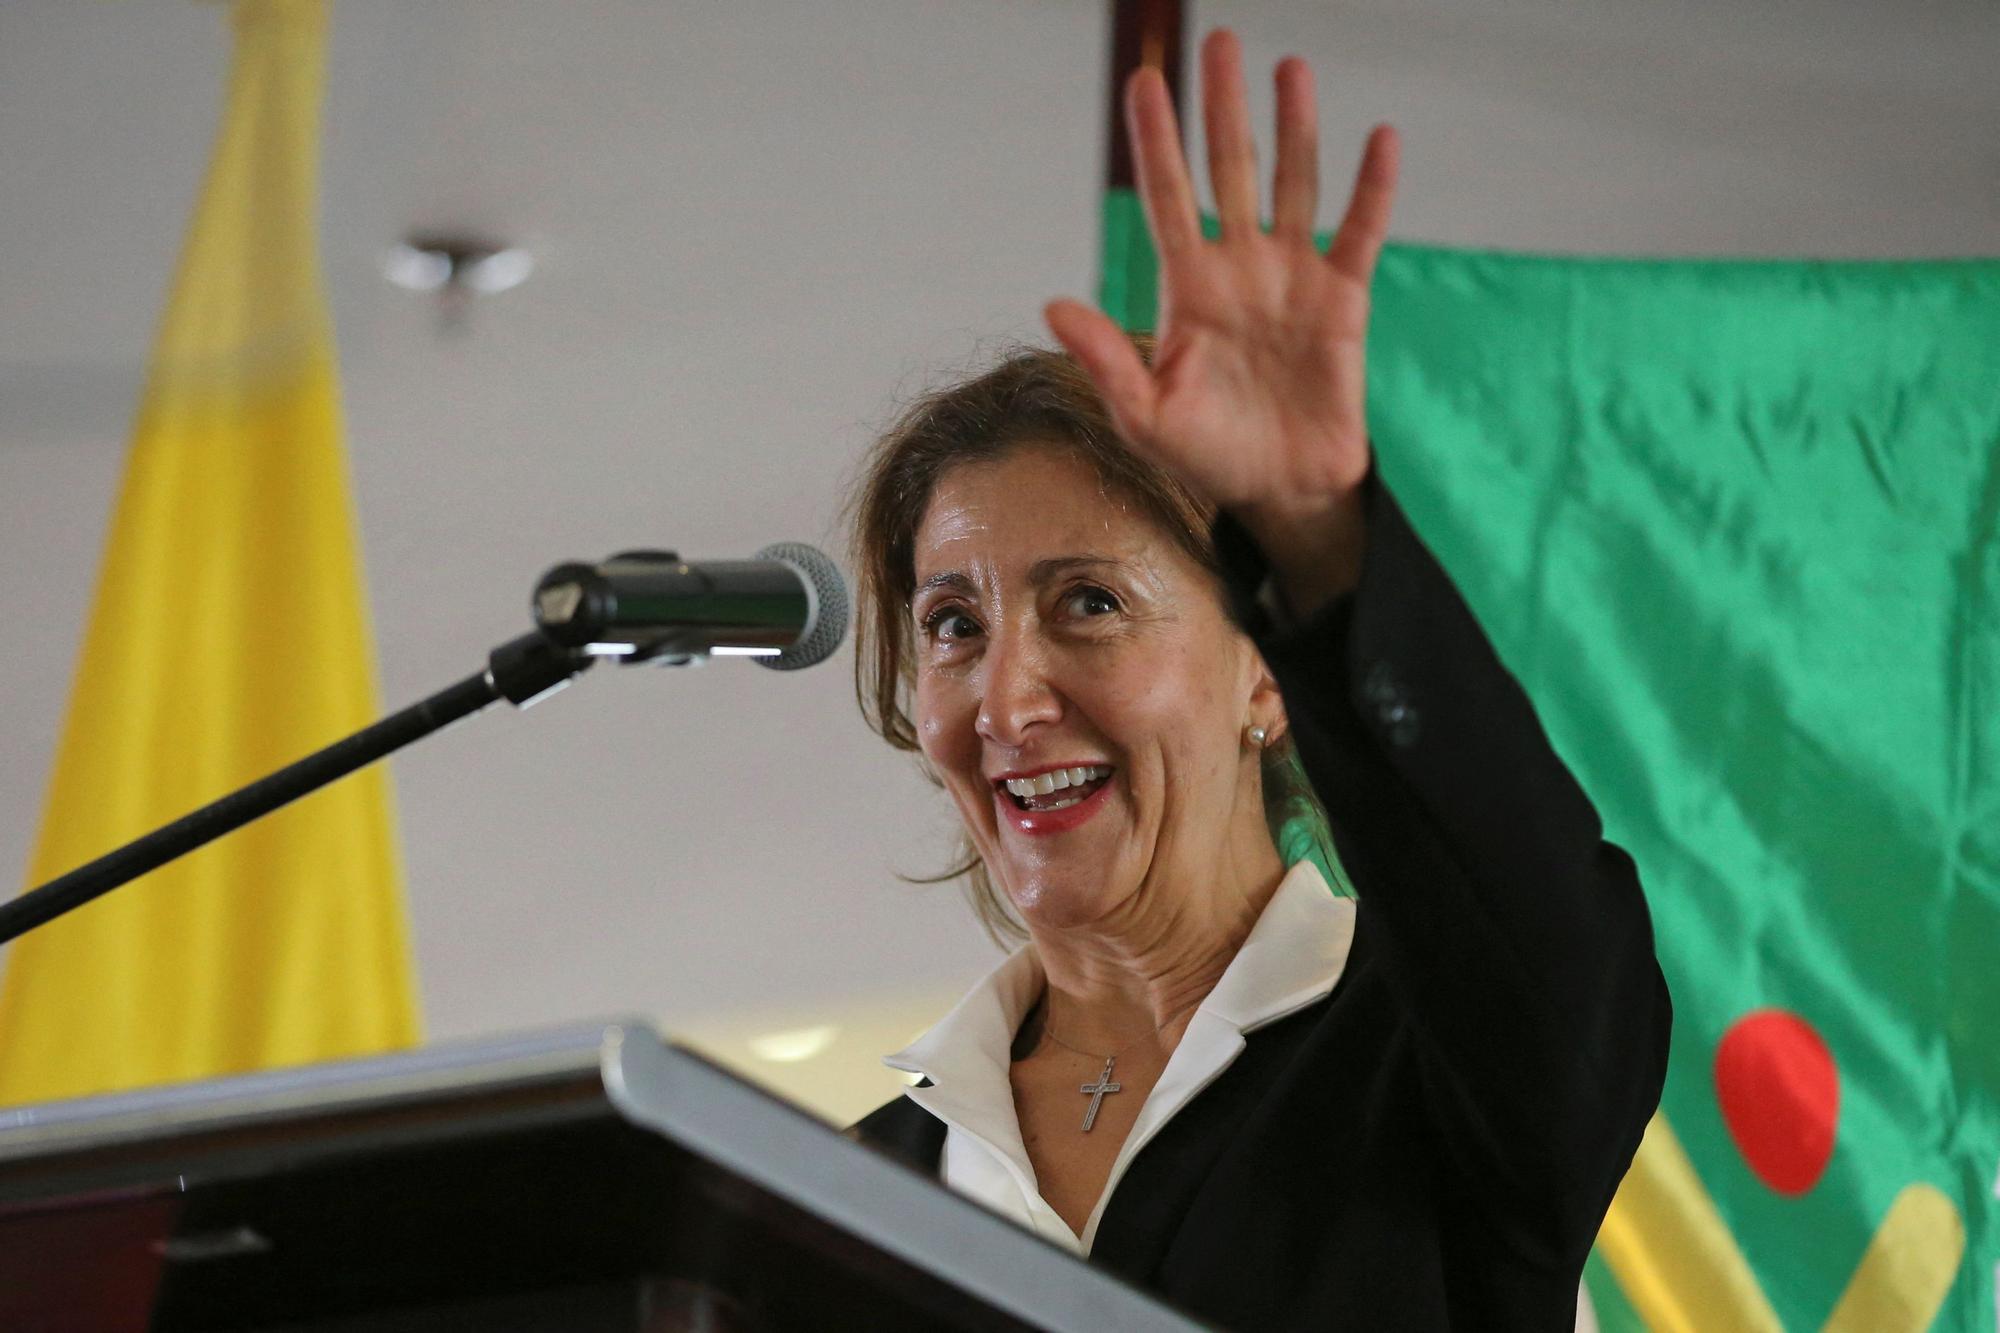 La candidata a las presidenciales colombianas Ingrid Betancourt durante su rueda de prensa en Bogotá